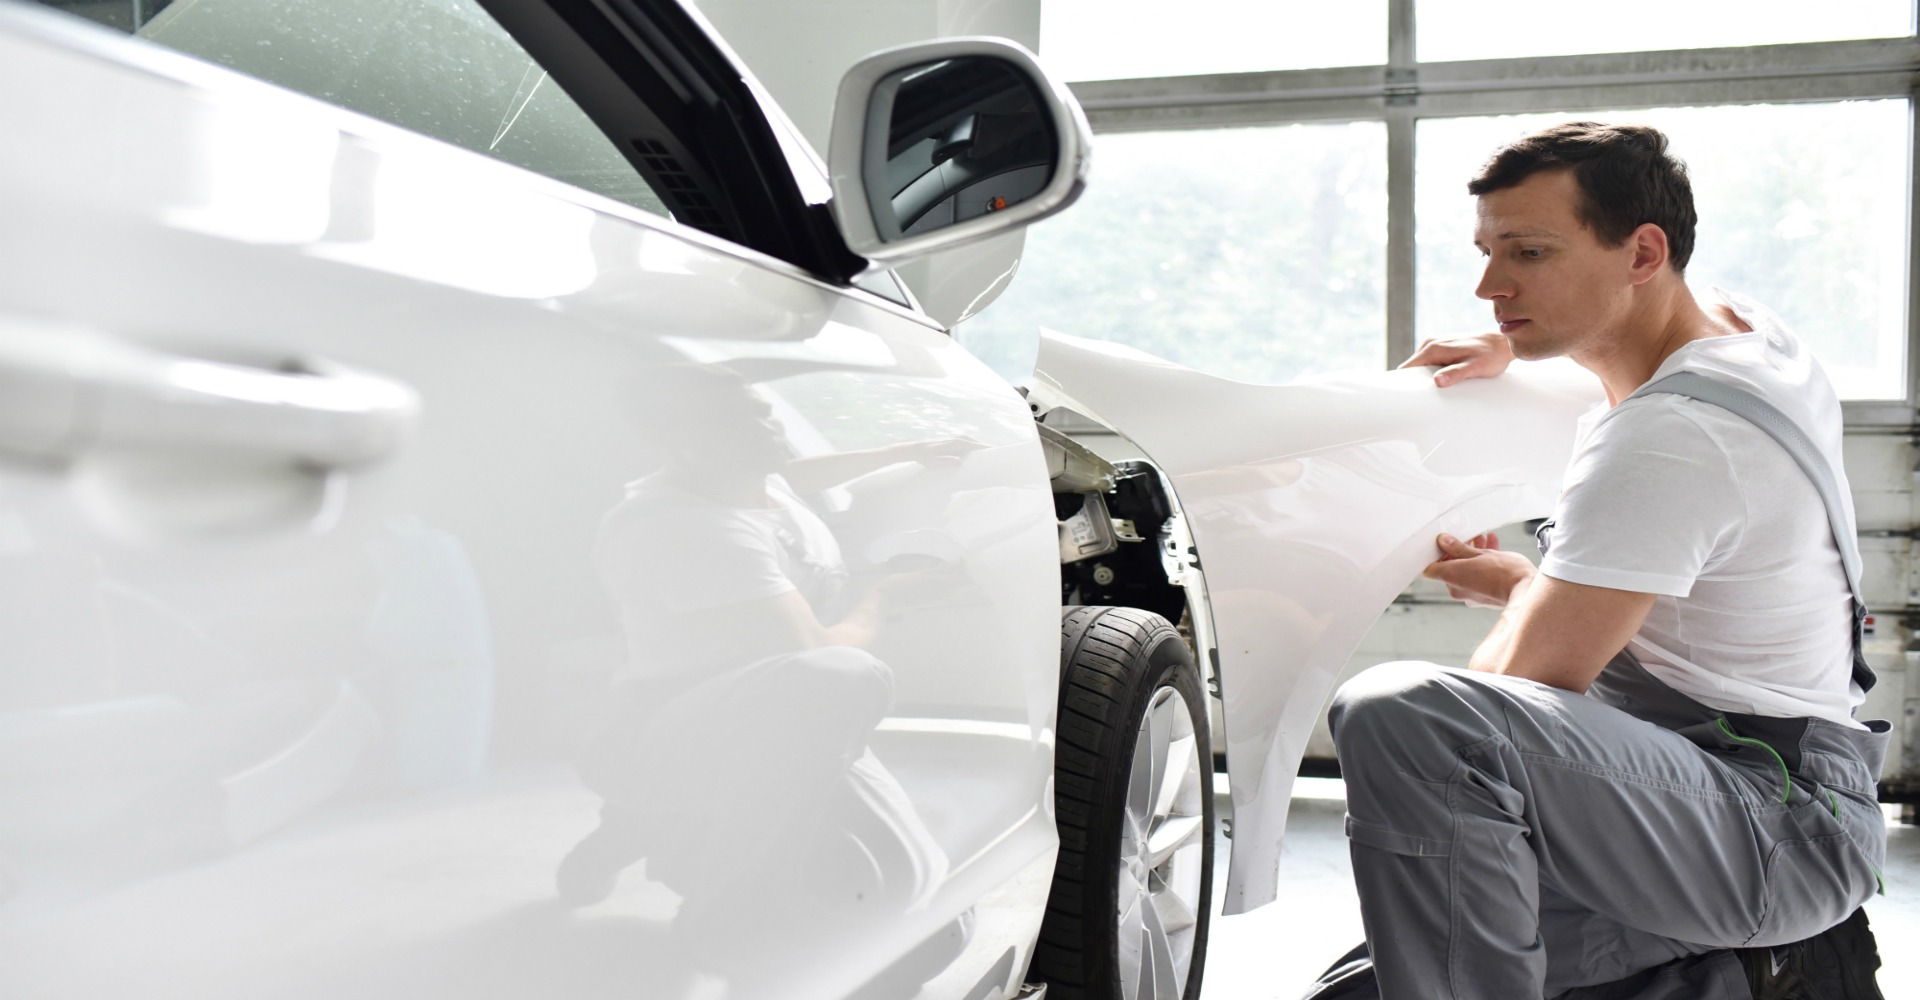 Choosing an Auto Body Shop for Collision Repair